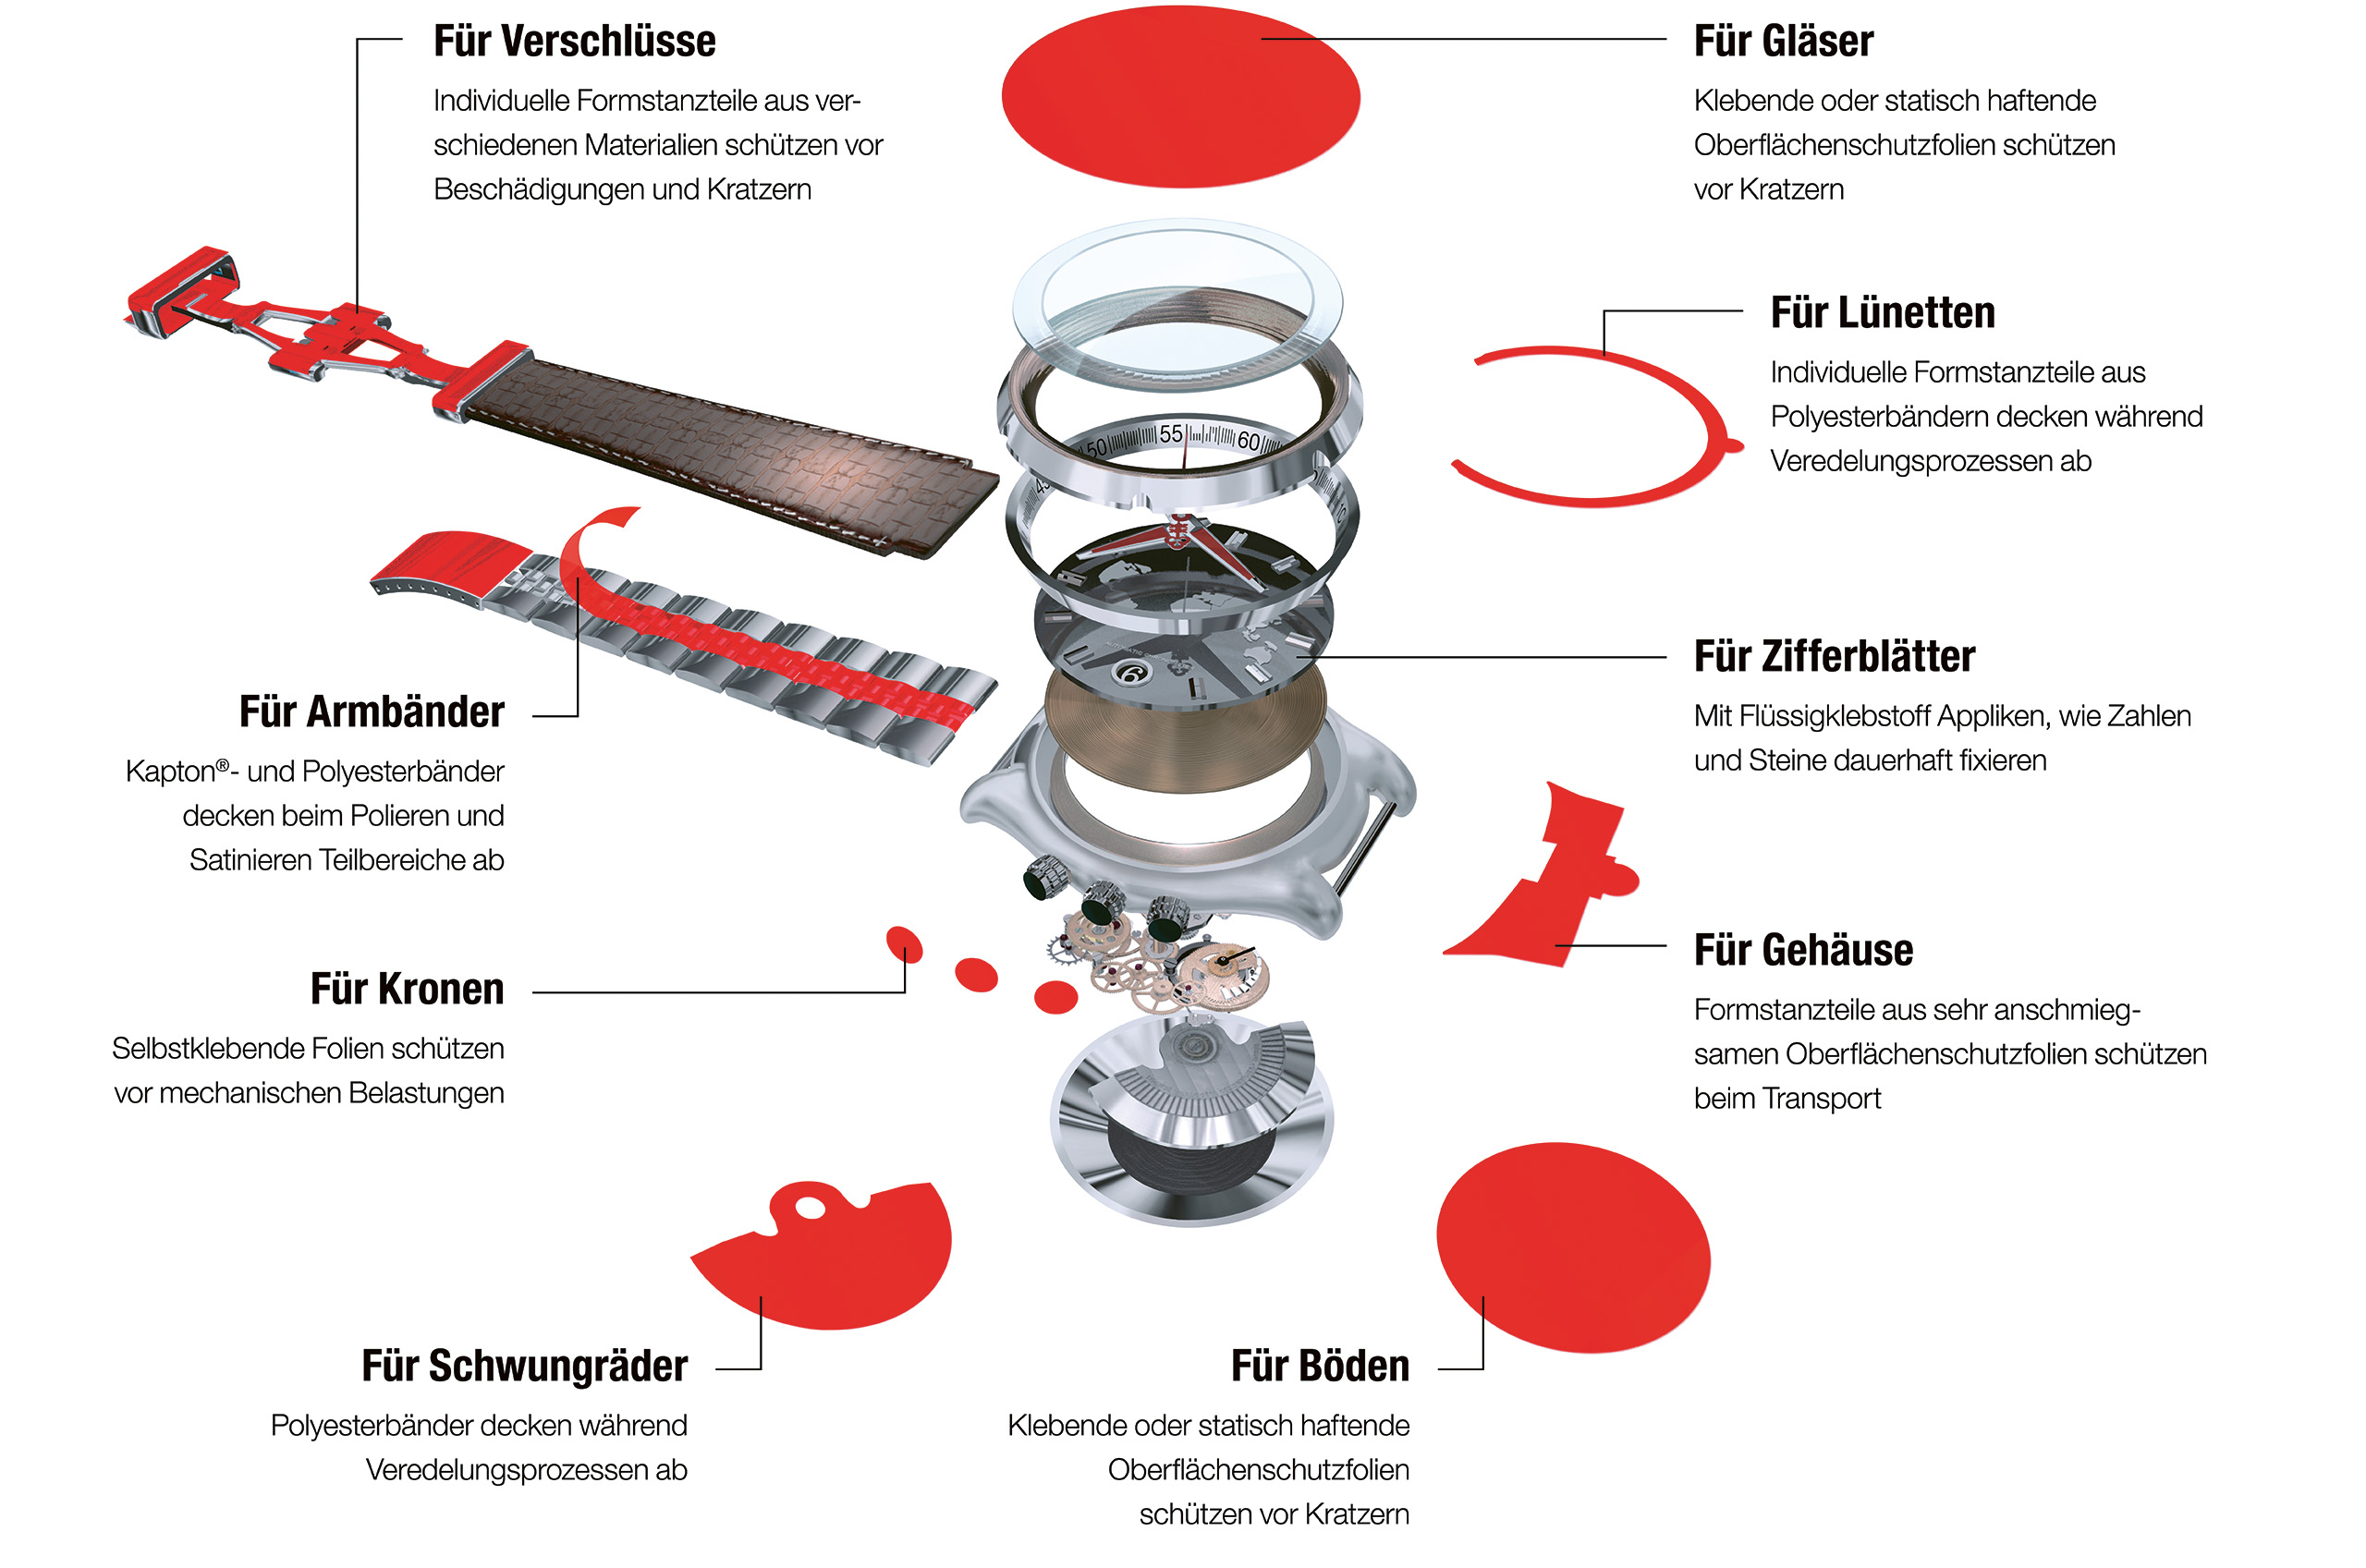 Einsatzmöglichkeiten von Oberflächenschutzfolien für die Uhrenindustrie.